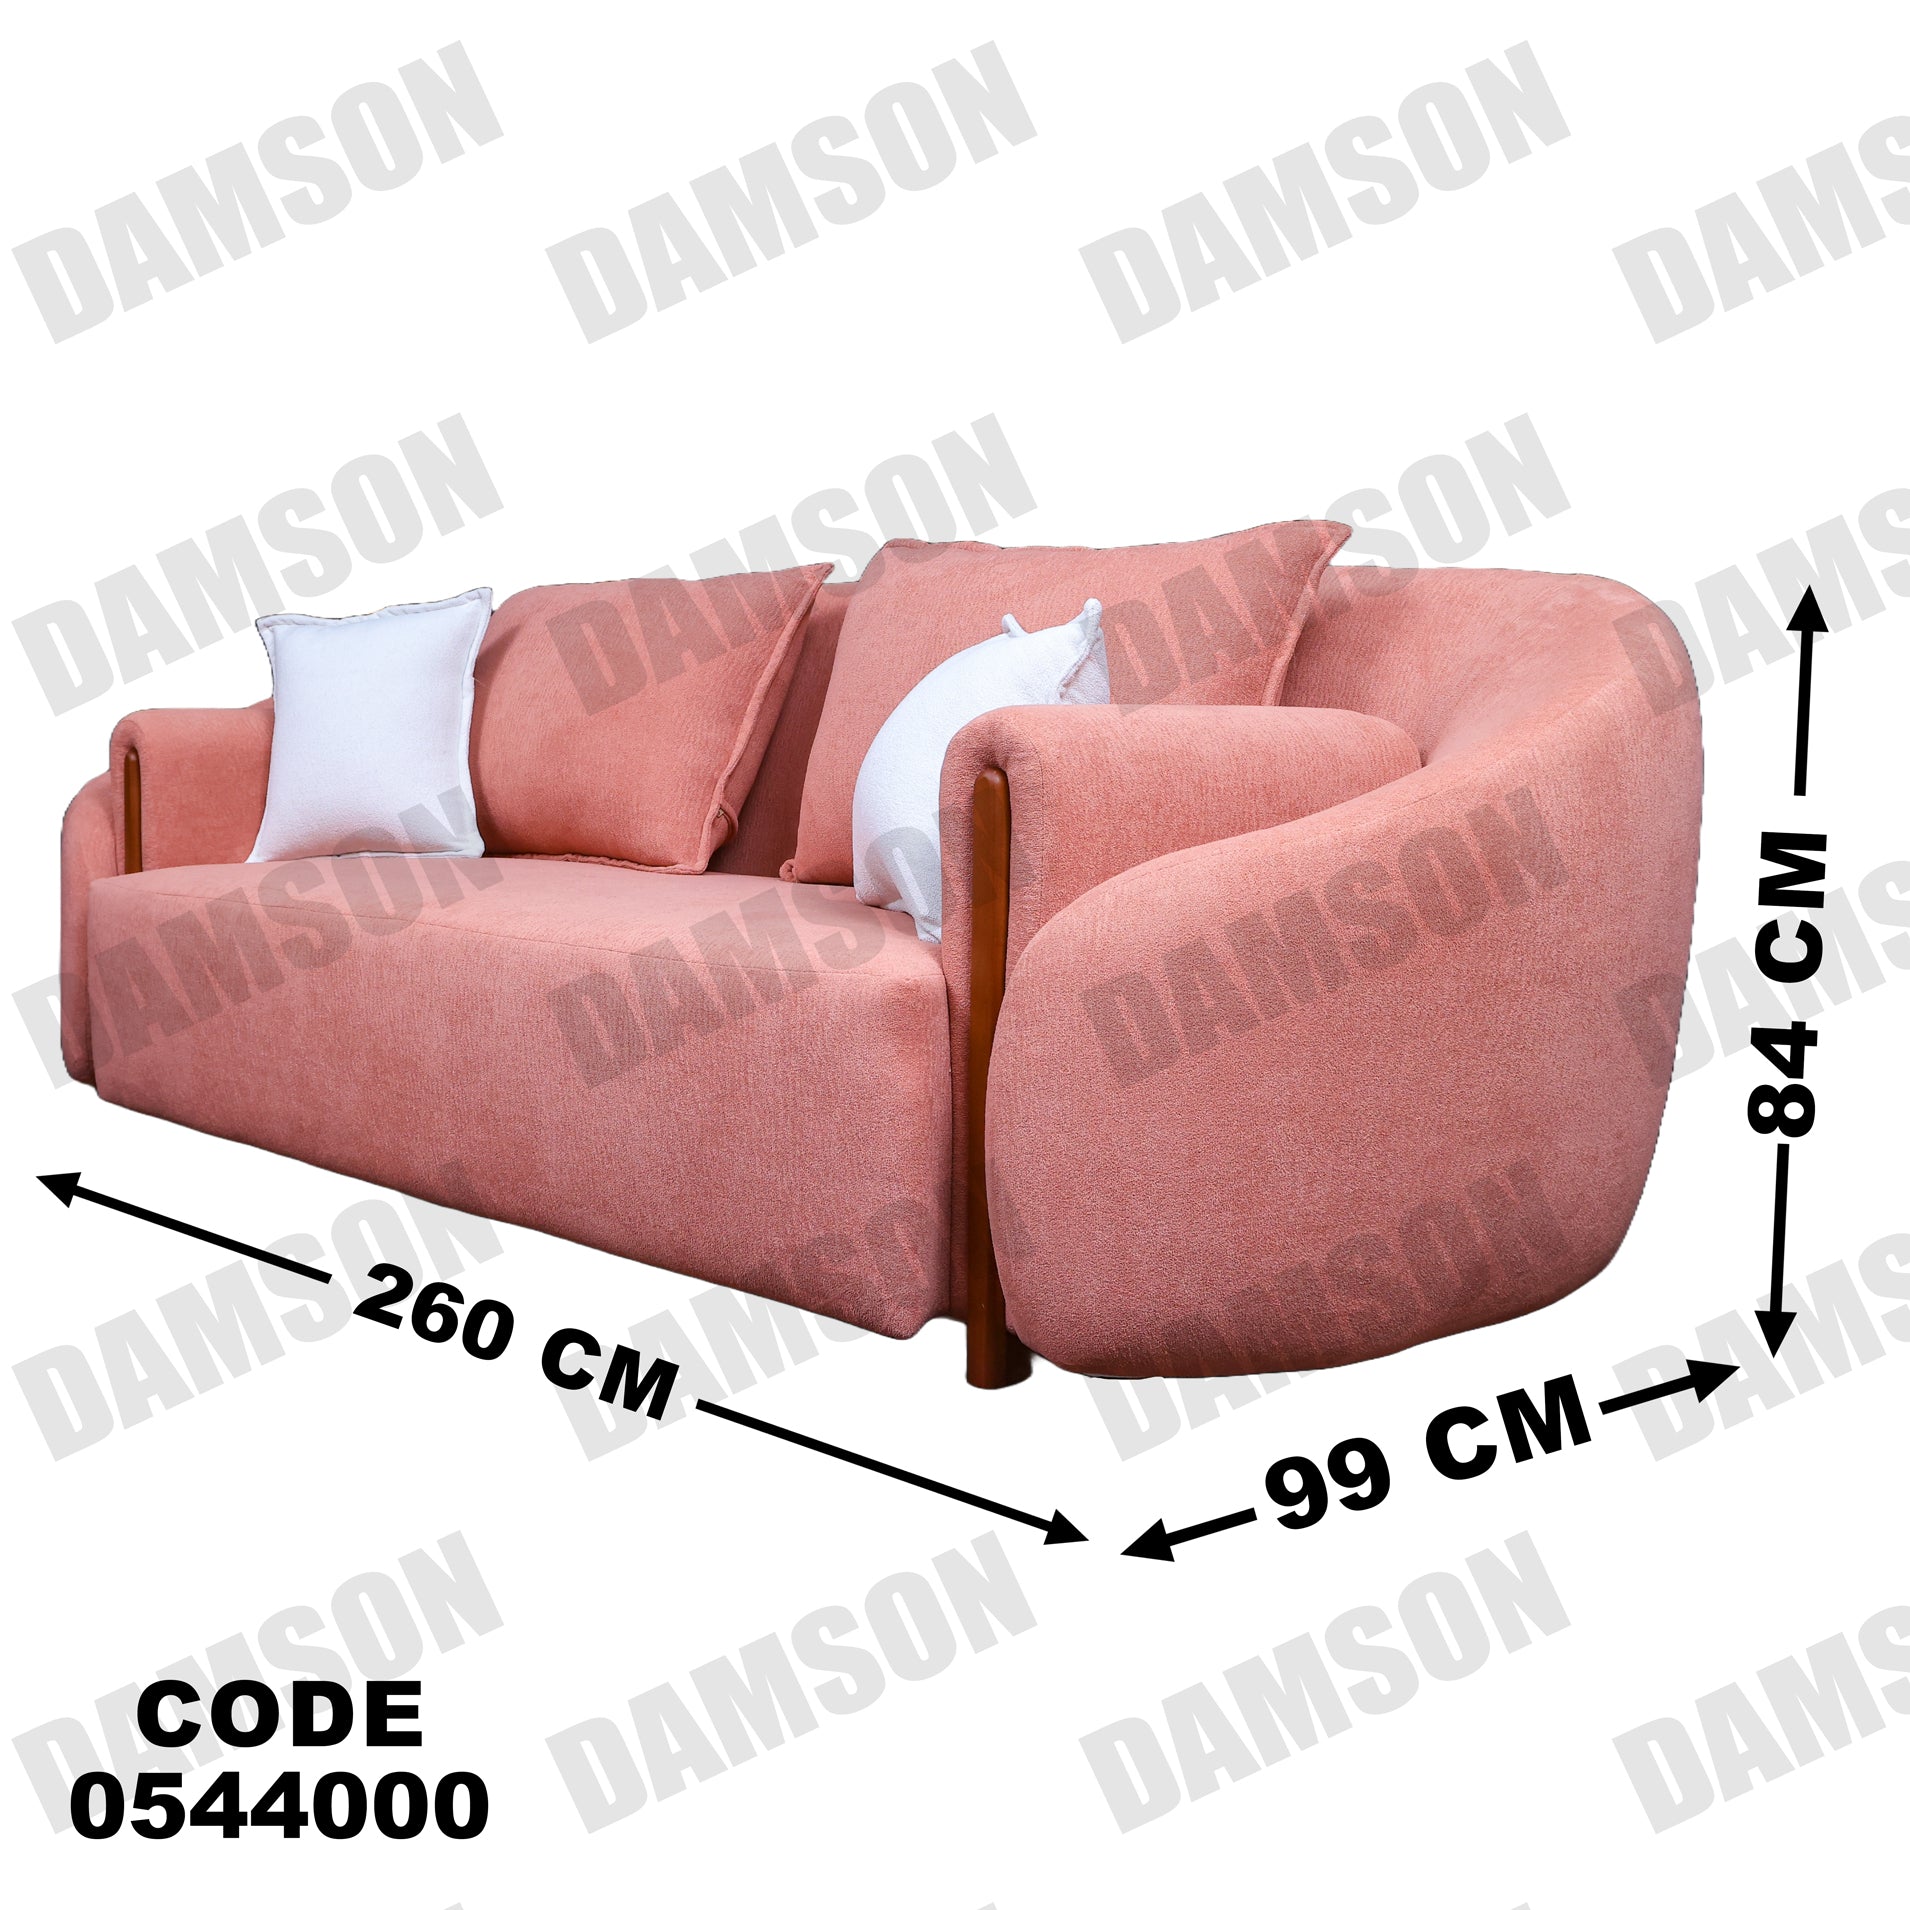 انترية 440 - Damson Furnitureانترية 440